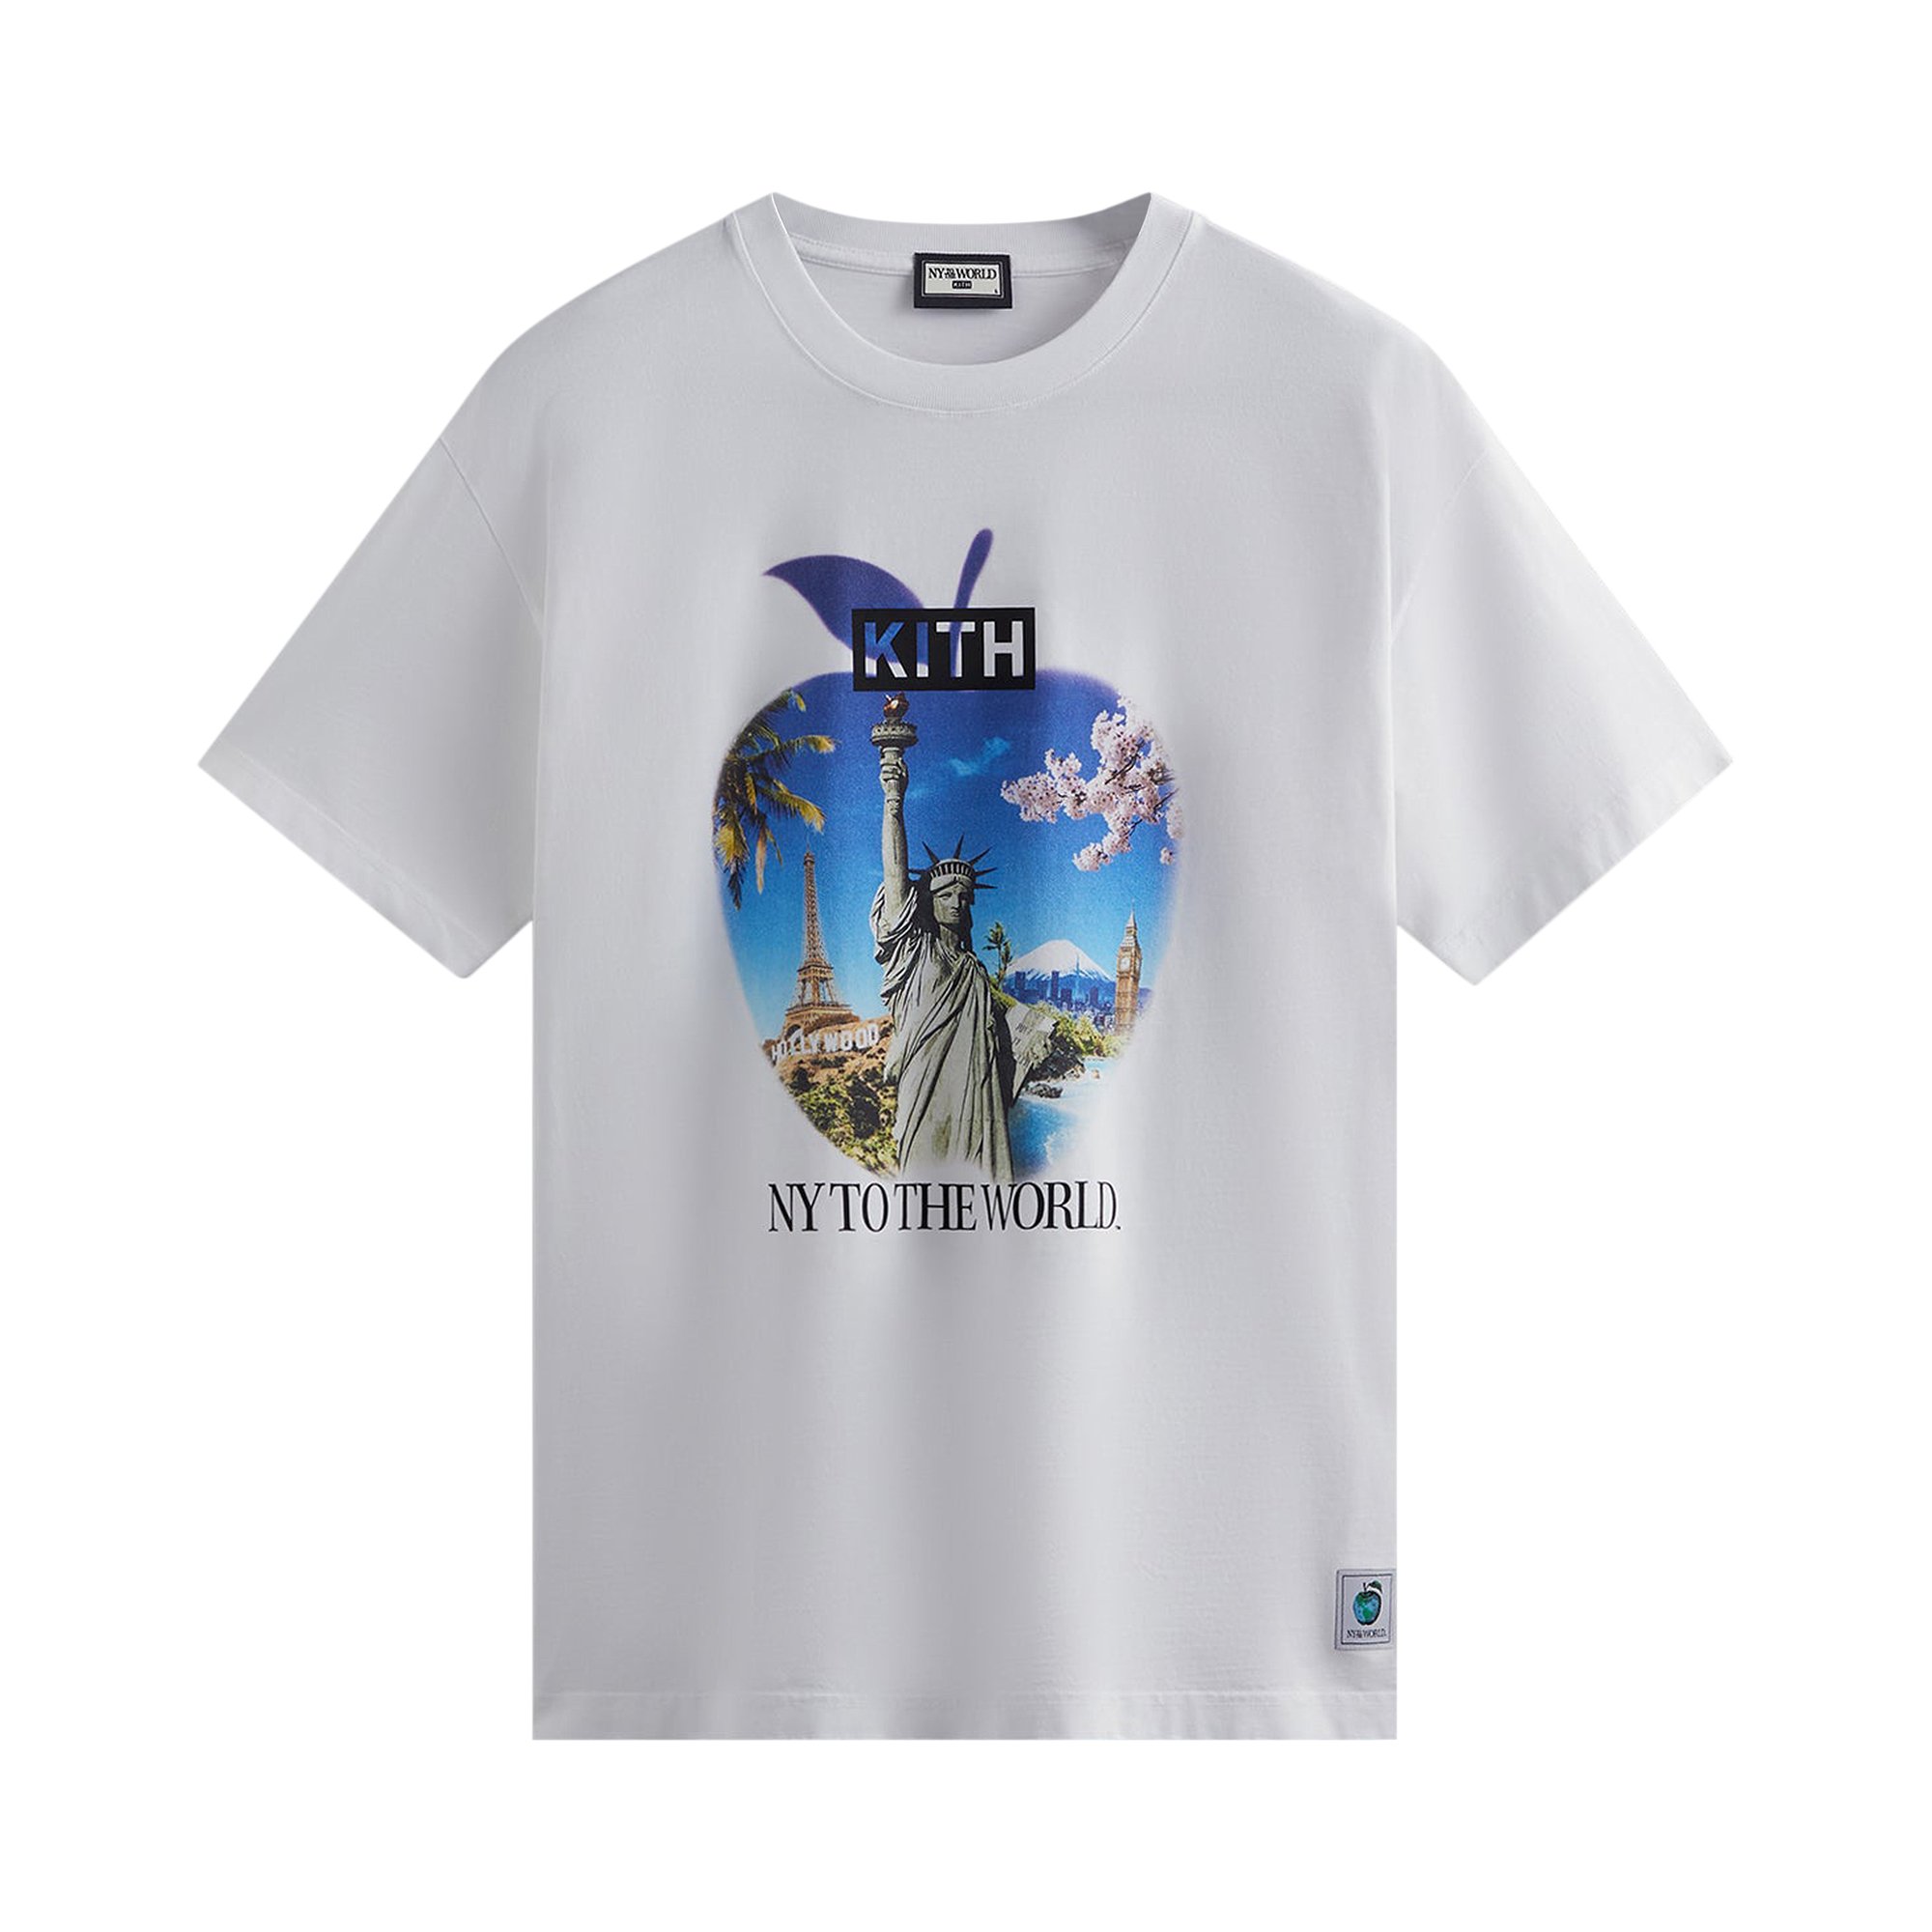 Сувенирная винтажная футболка Kith New York To The World Белая